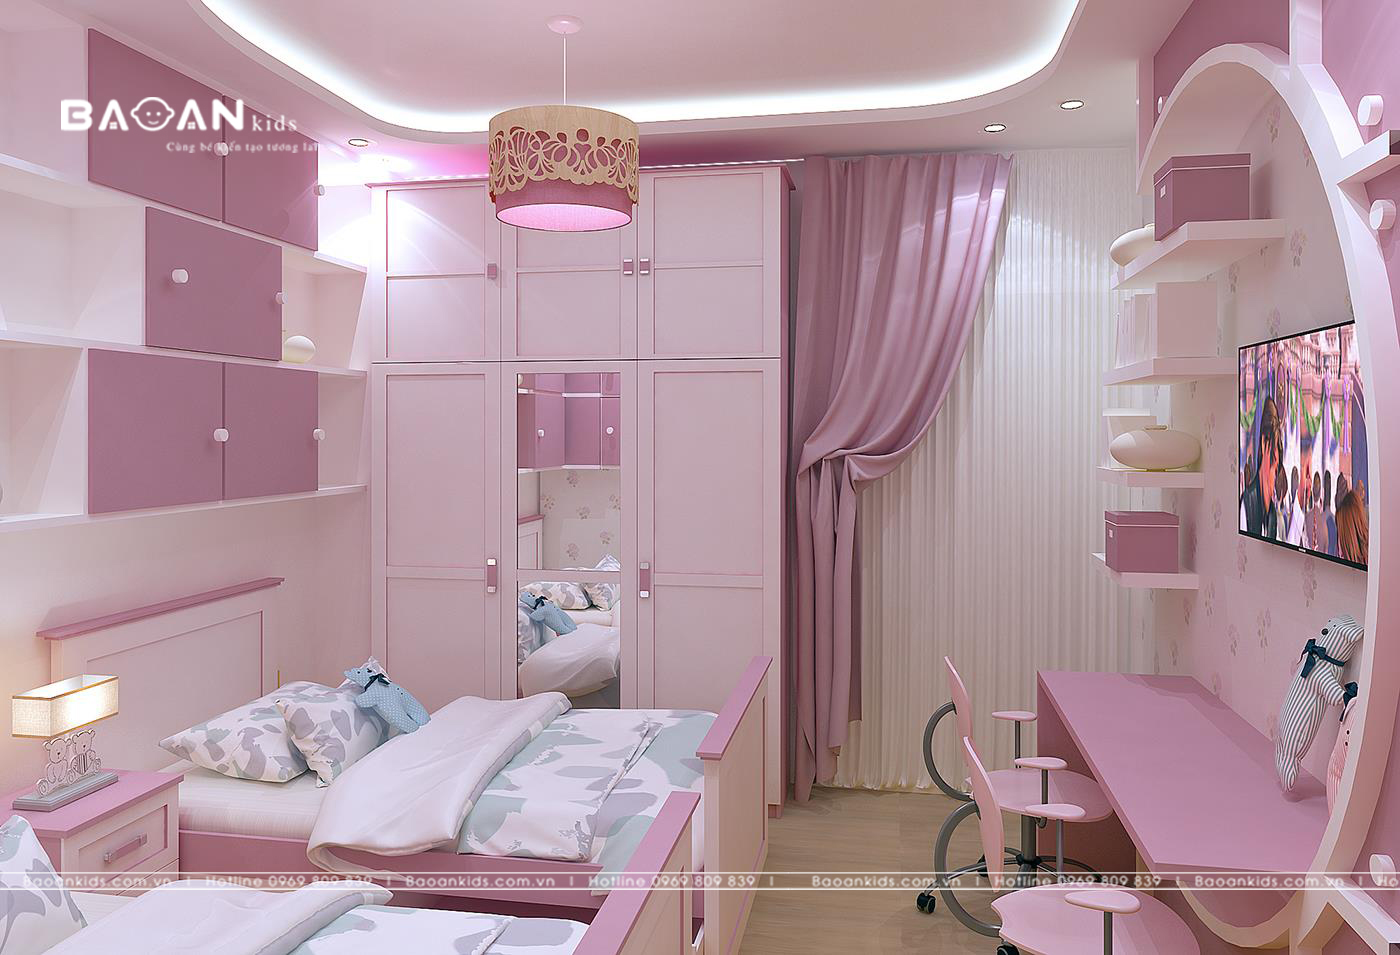 Mẫu phòng ngủ hiện đại gam màu hồng trắng cho các cô bé học trò